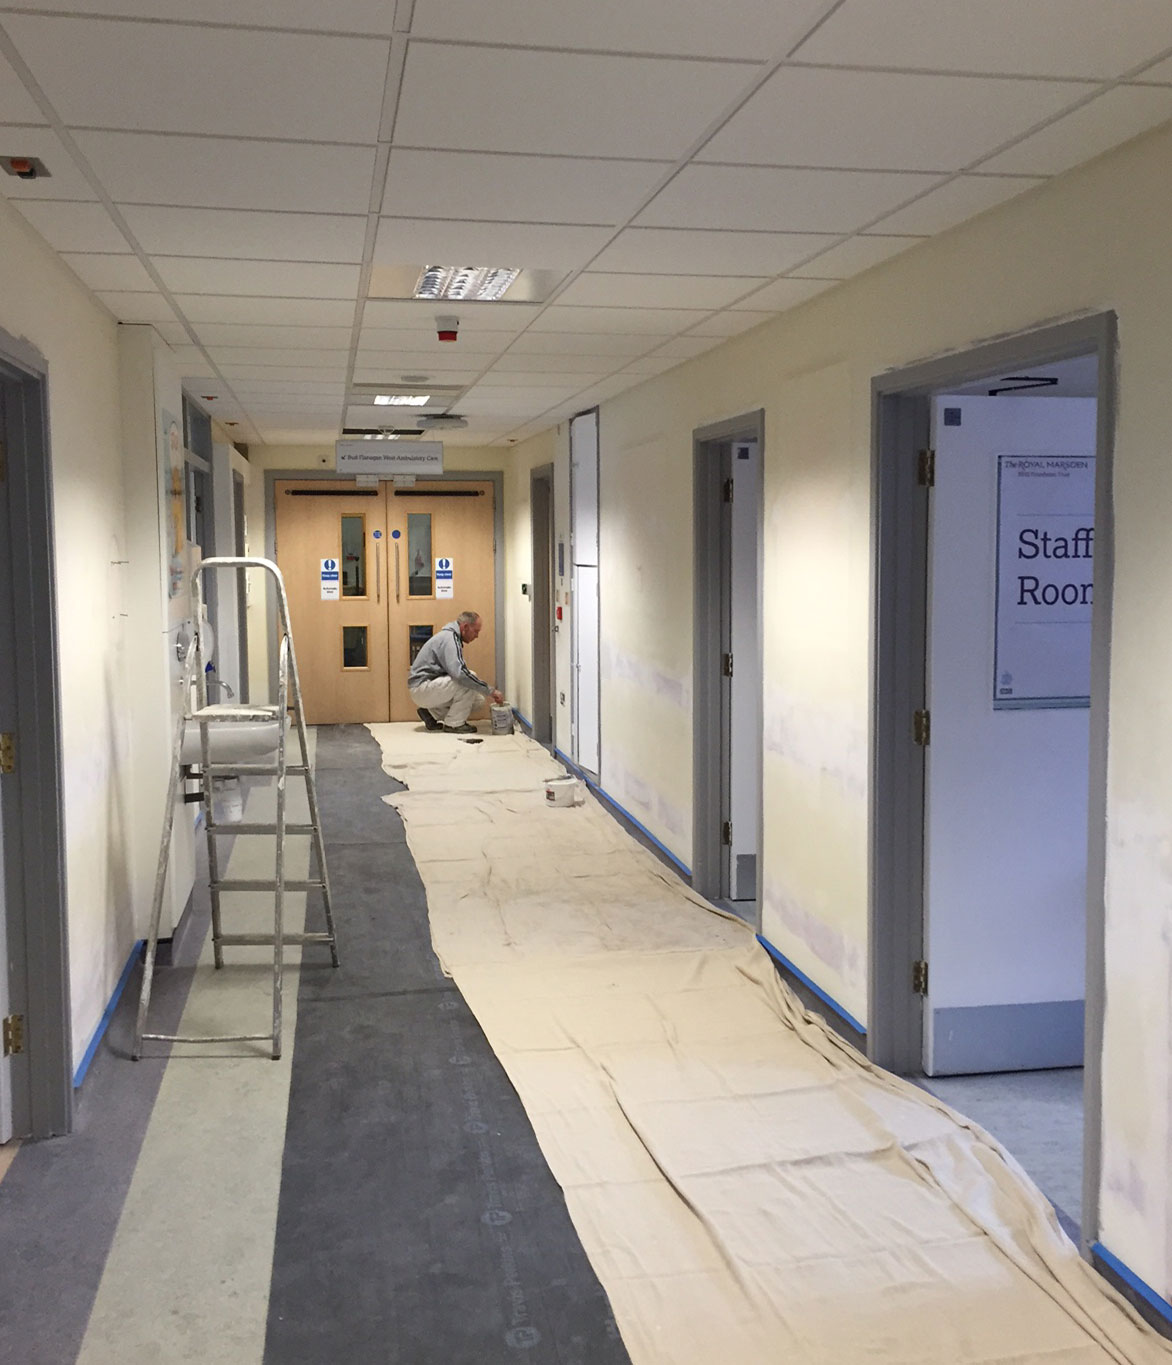 Corridor prepped for painting, Royal Marsden Hospital